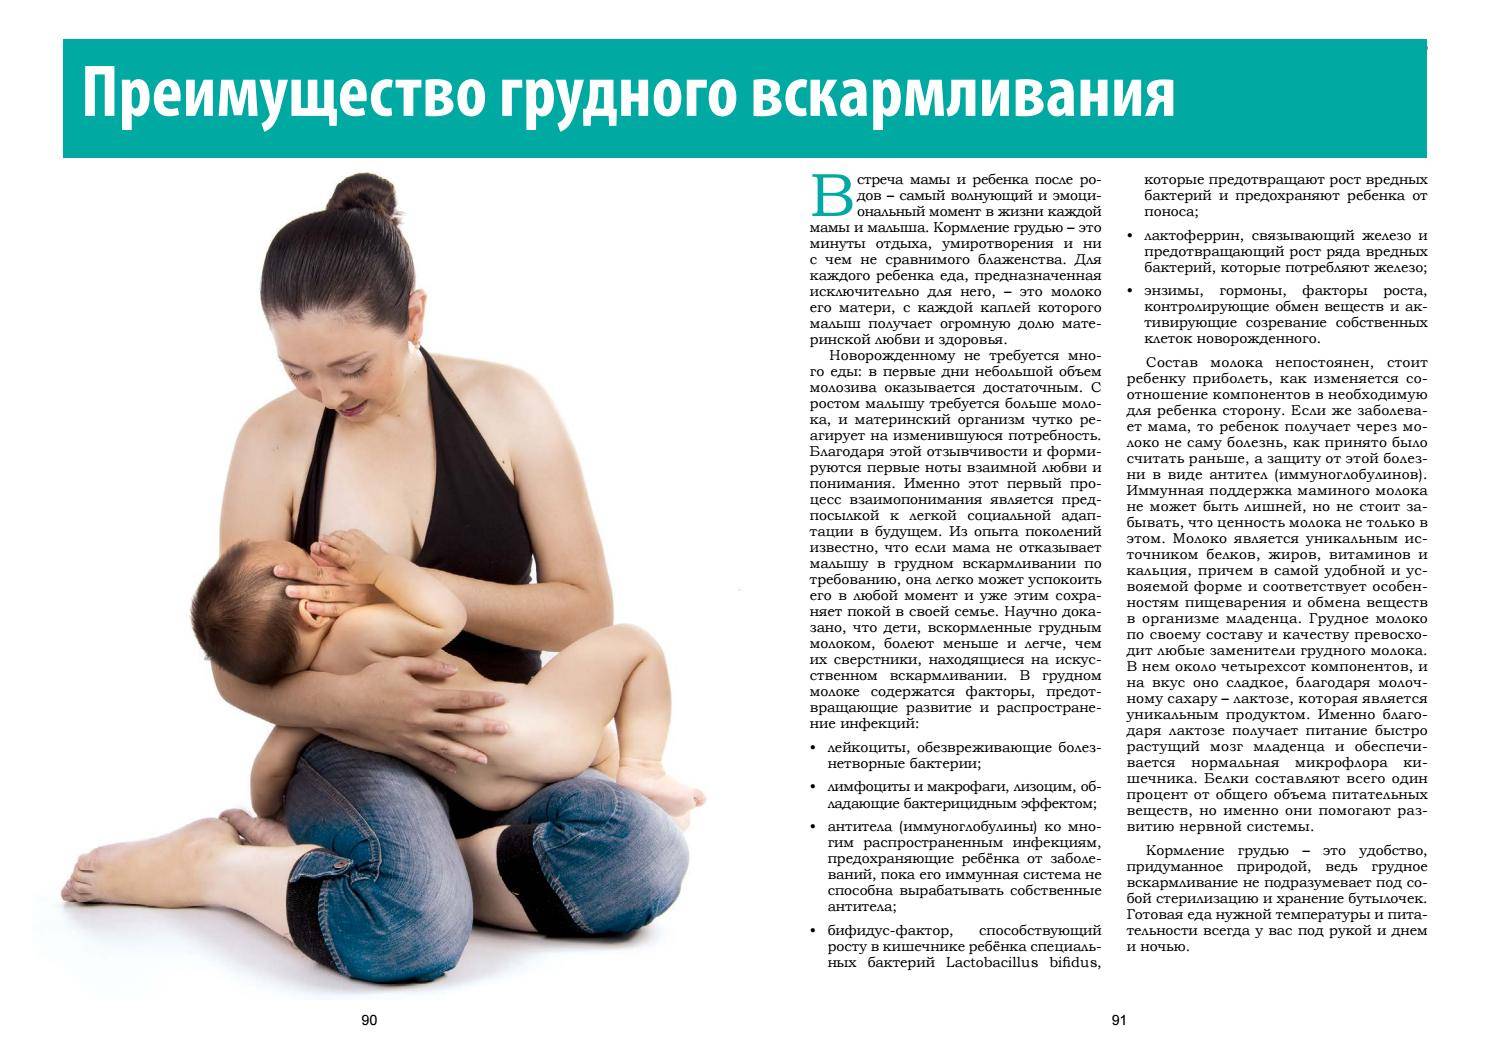 Высаживание и естественная гигиена малыша   | материнство - беременность, роды, питание, воспитание